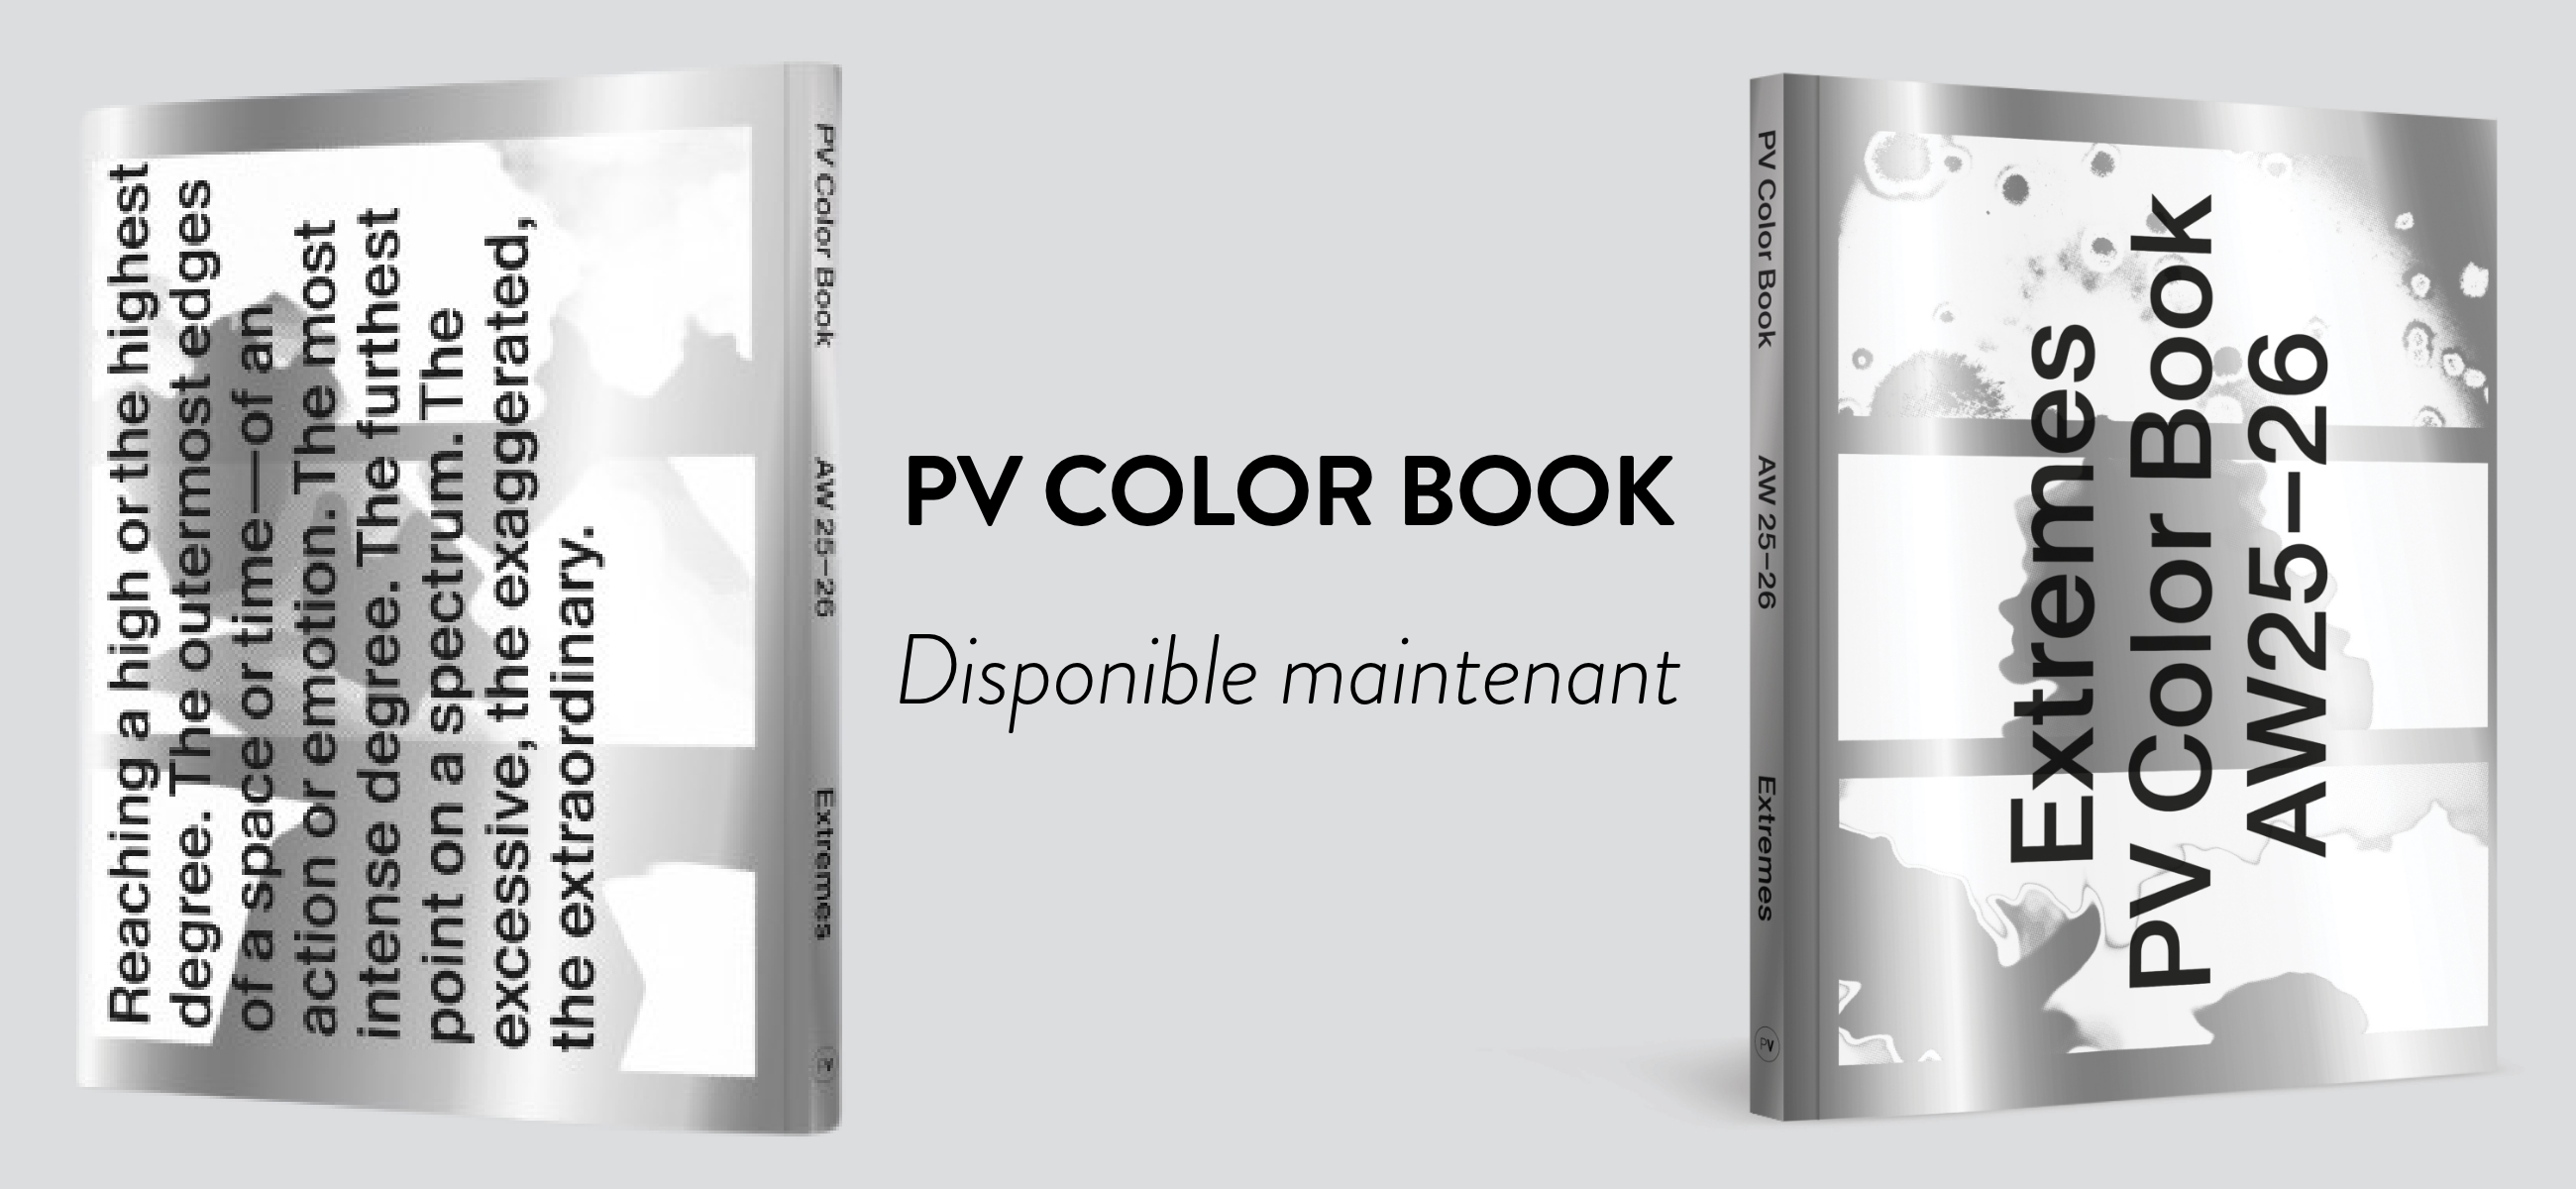 PV Color Book PV Magazine